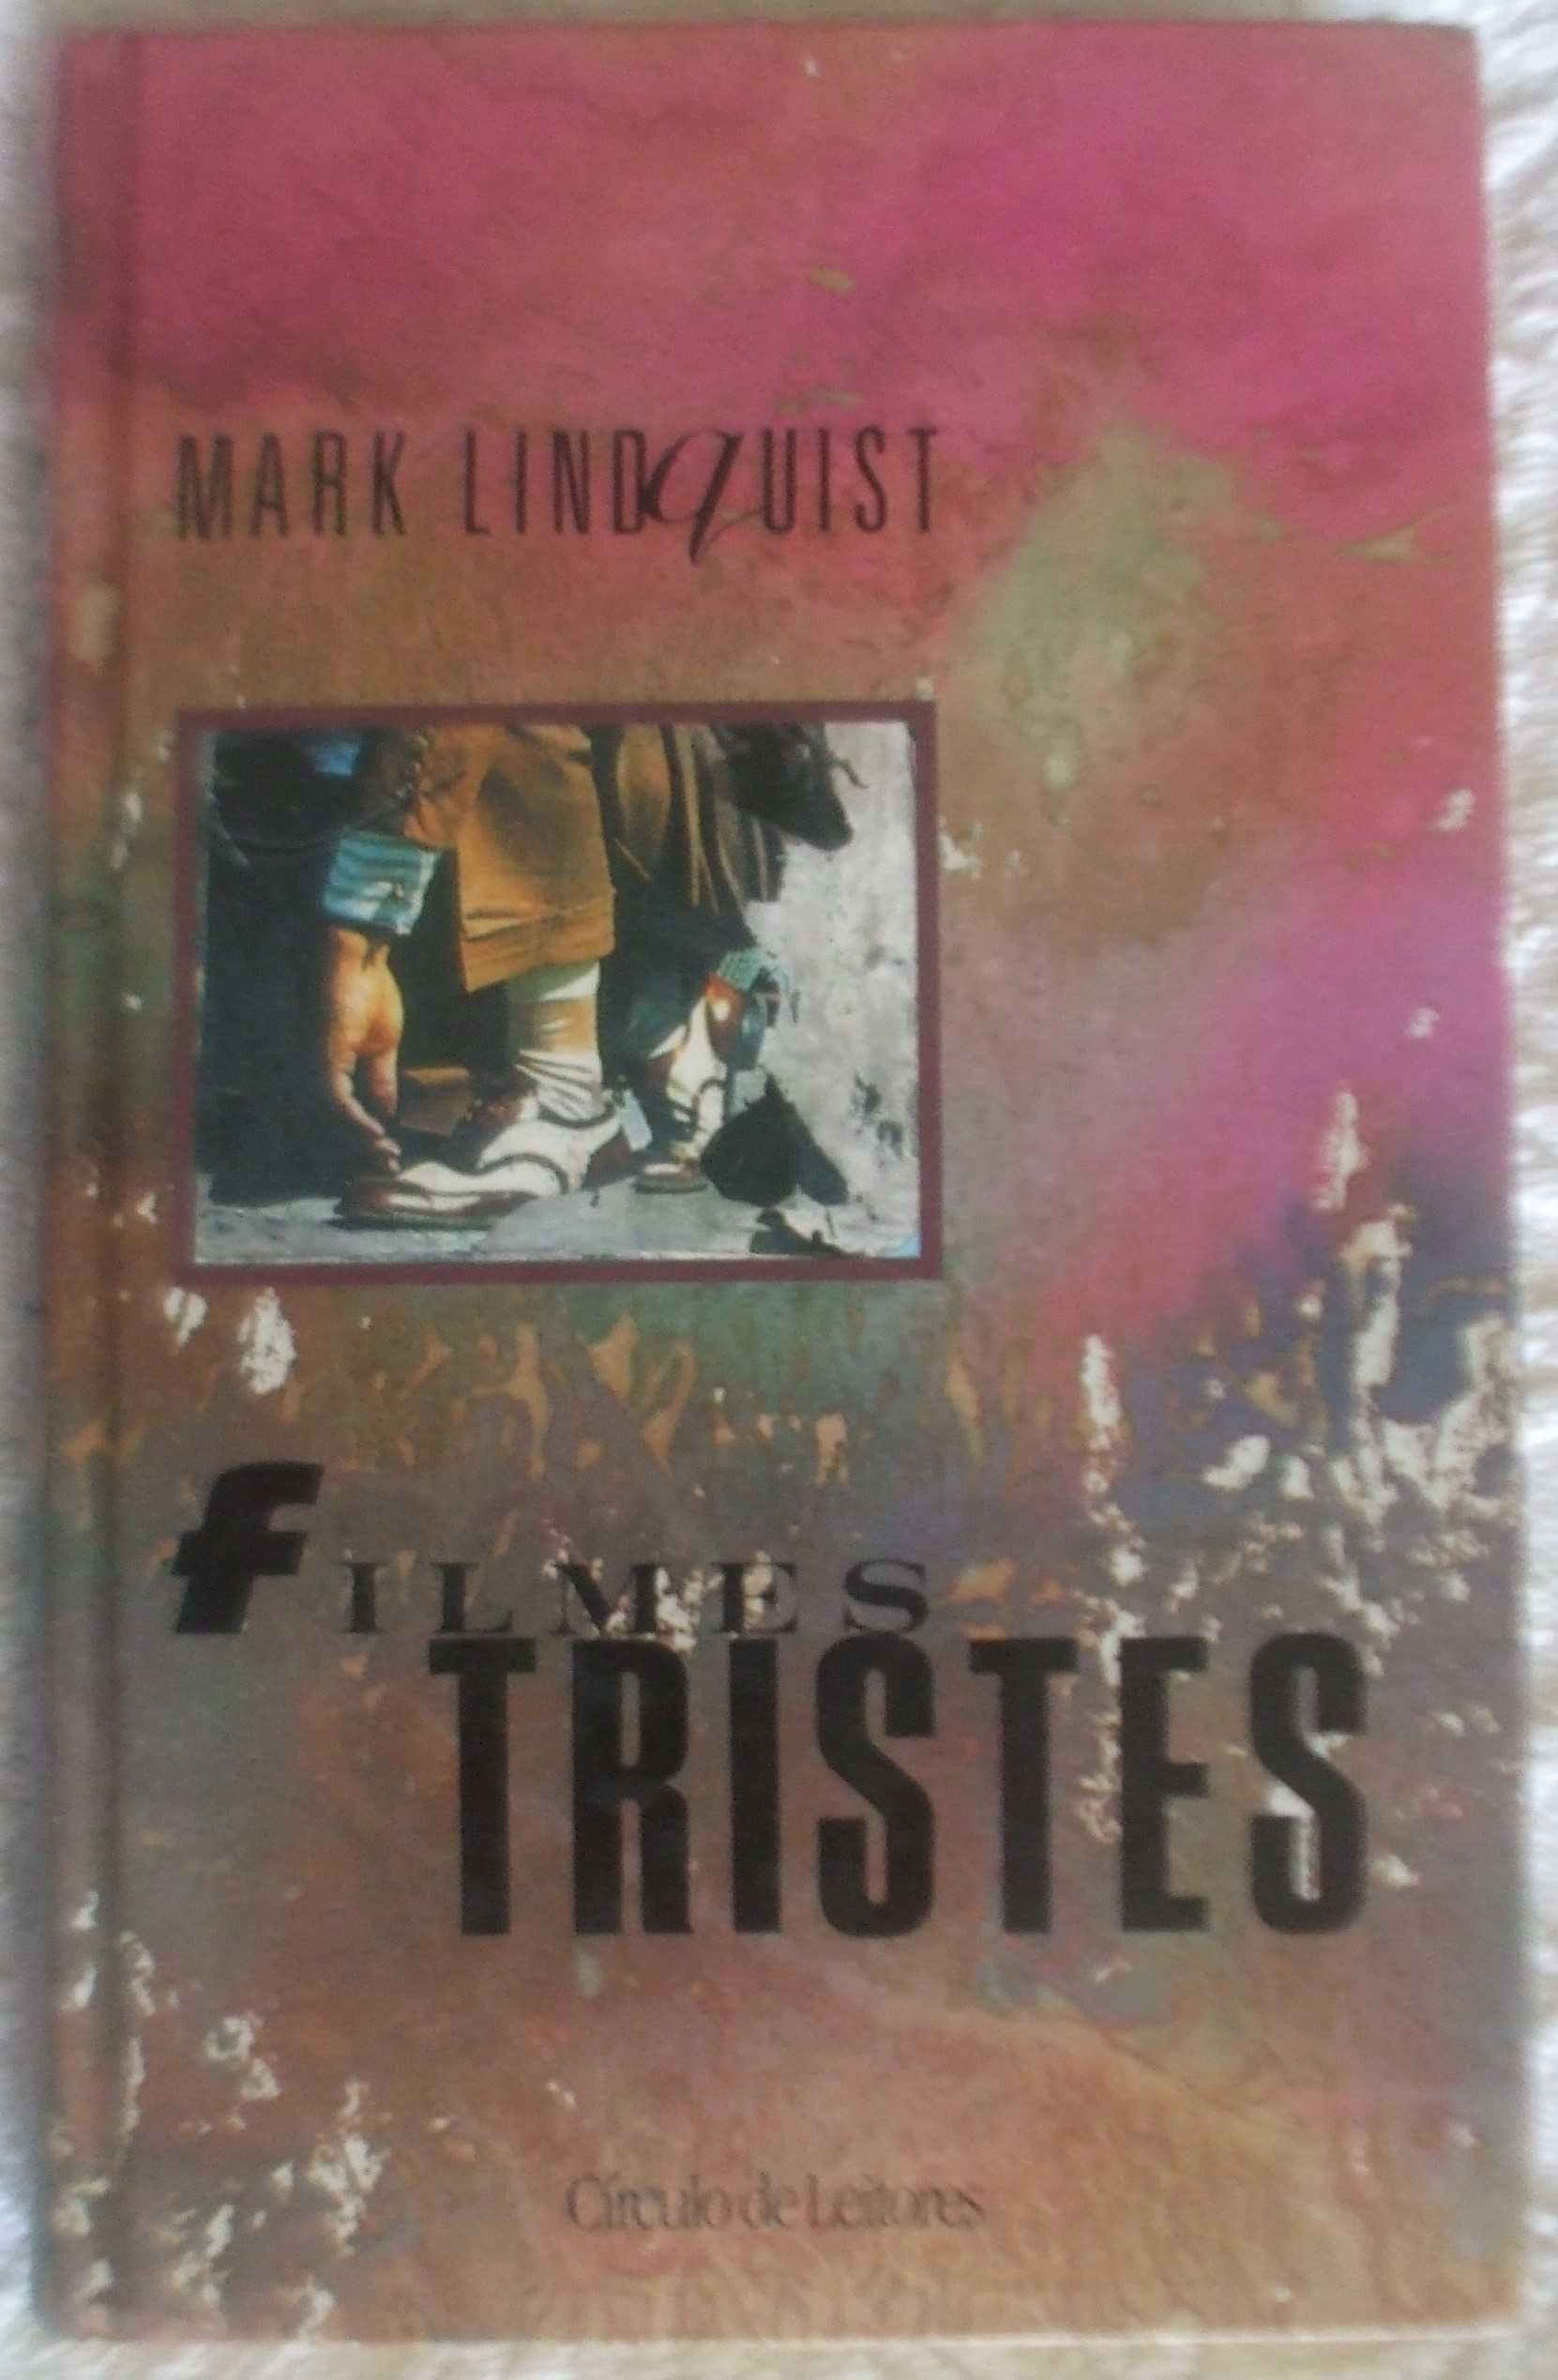 Filmes tristes, Mark Linquist